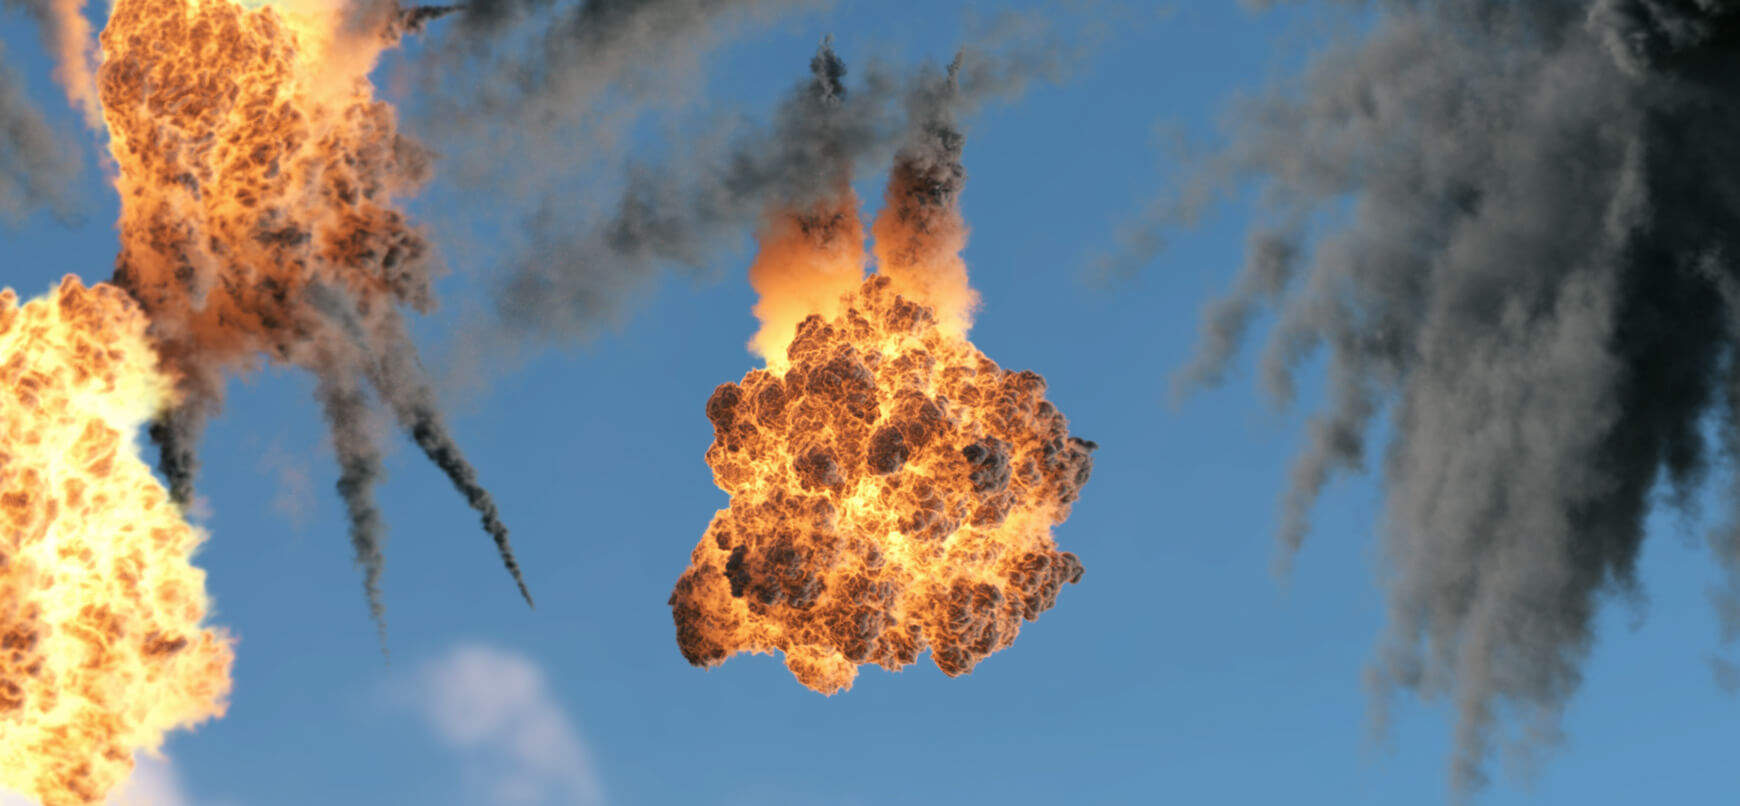 VDB Explosions Aerial Volumes VFX